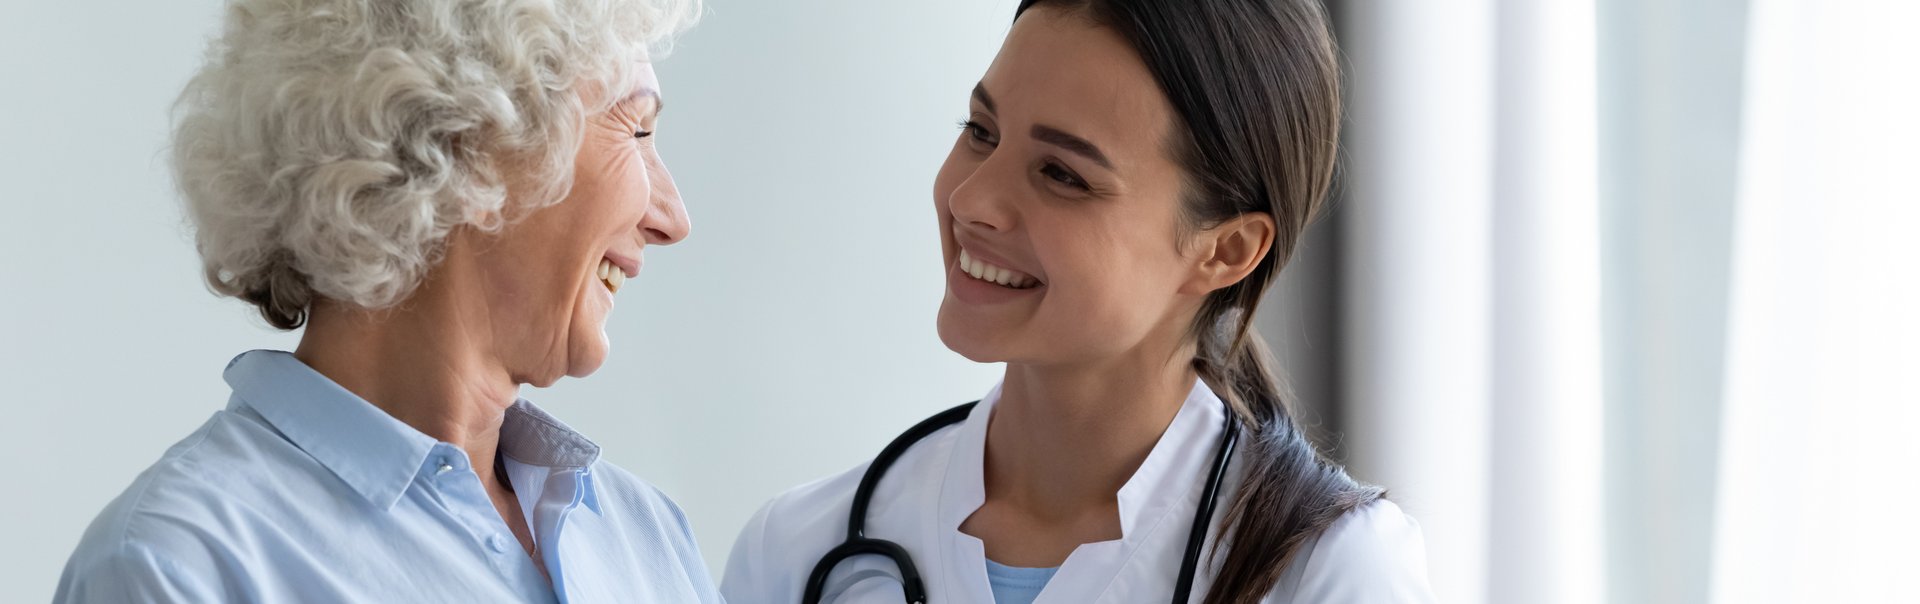 Eine junge Ärztin lächelt eine ältere Patientin an.